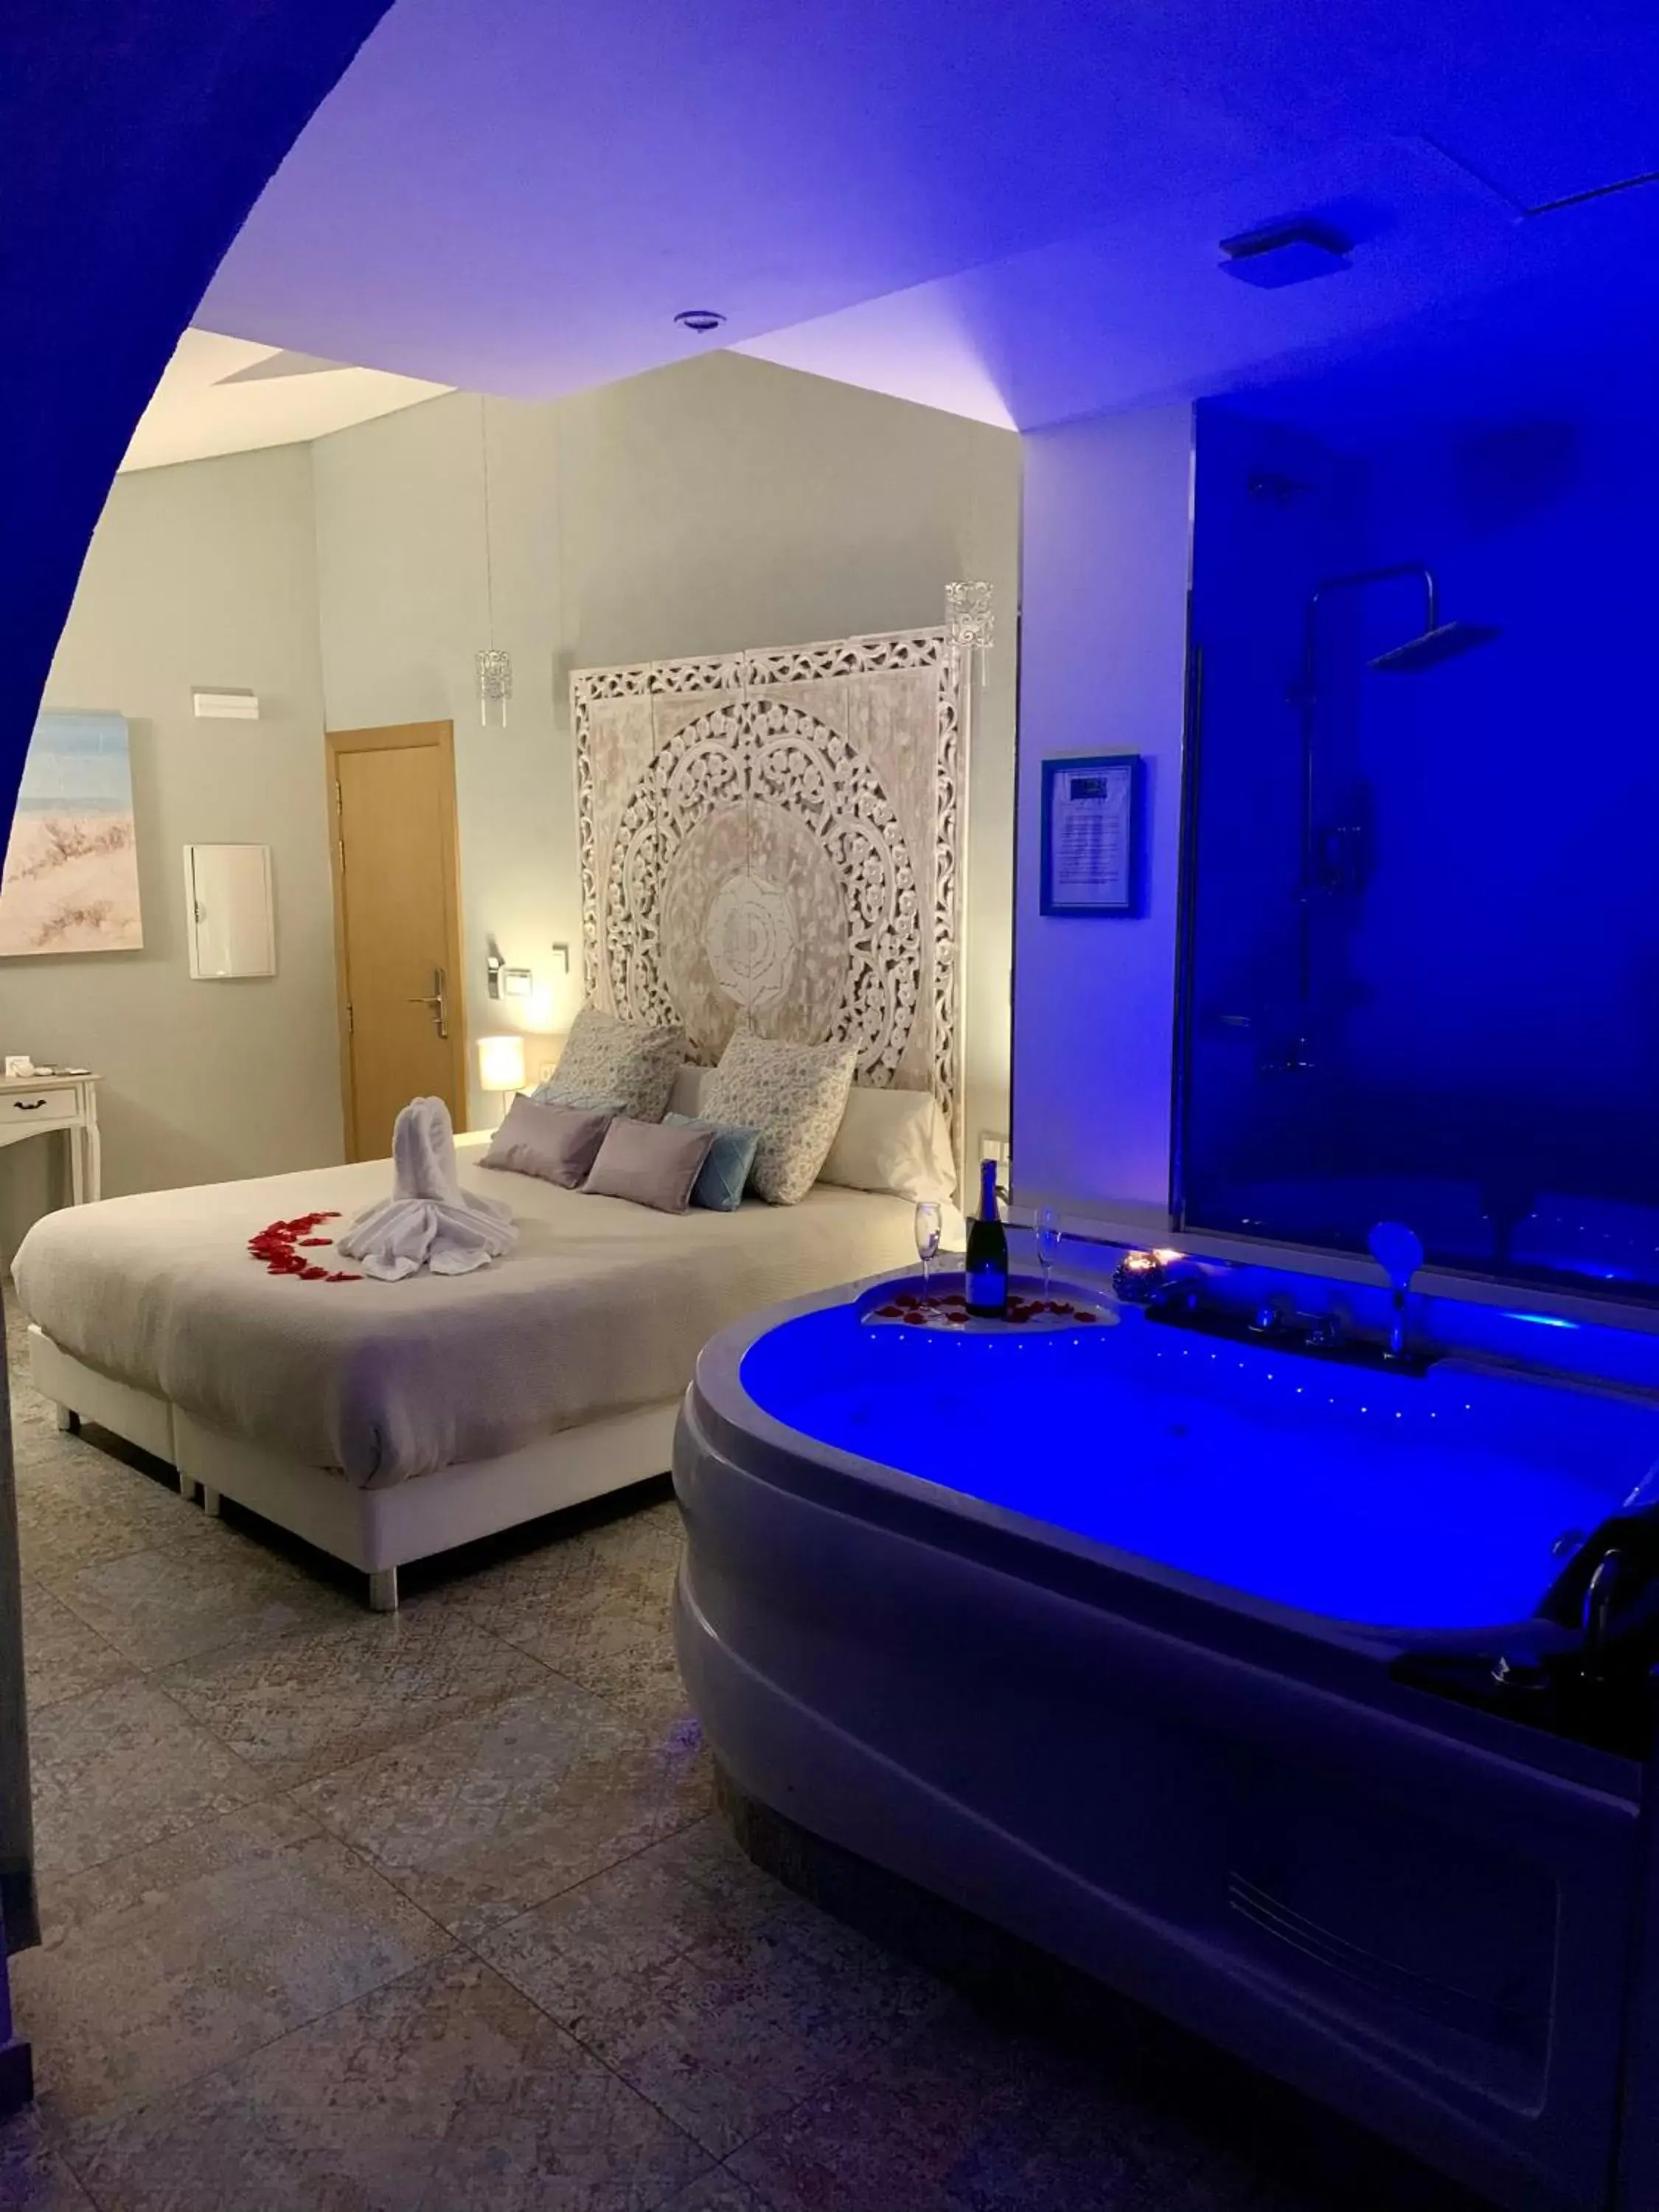 Bedroom, Bathroom in Hotel Spa Adealba